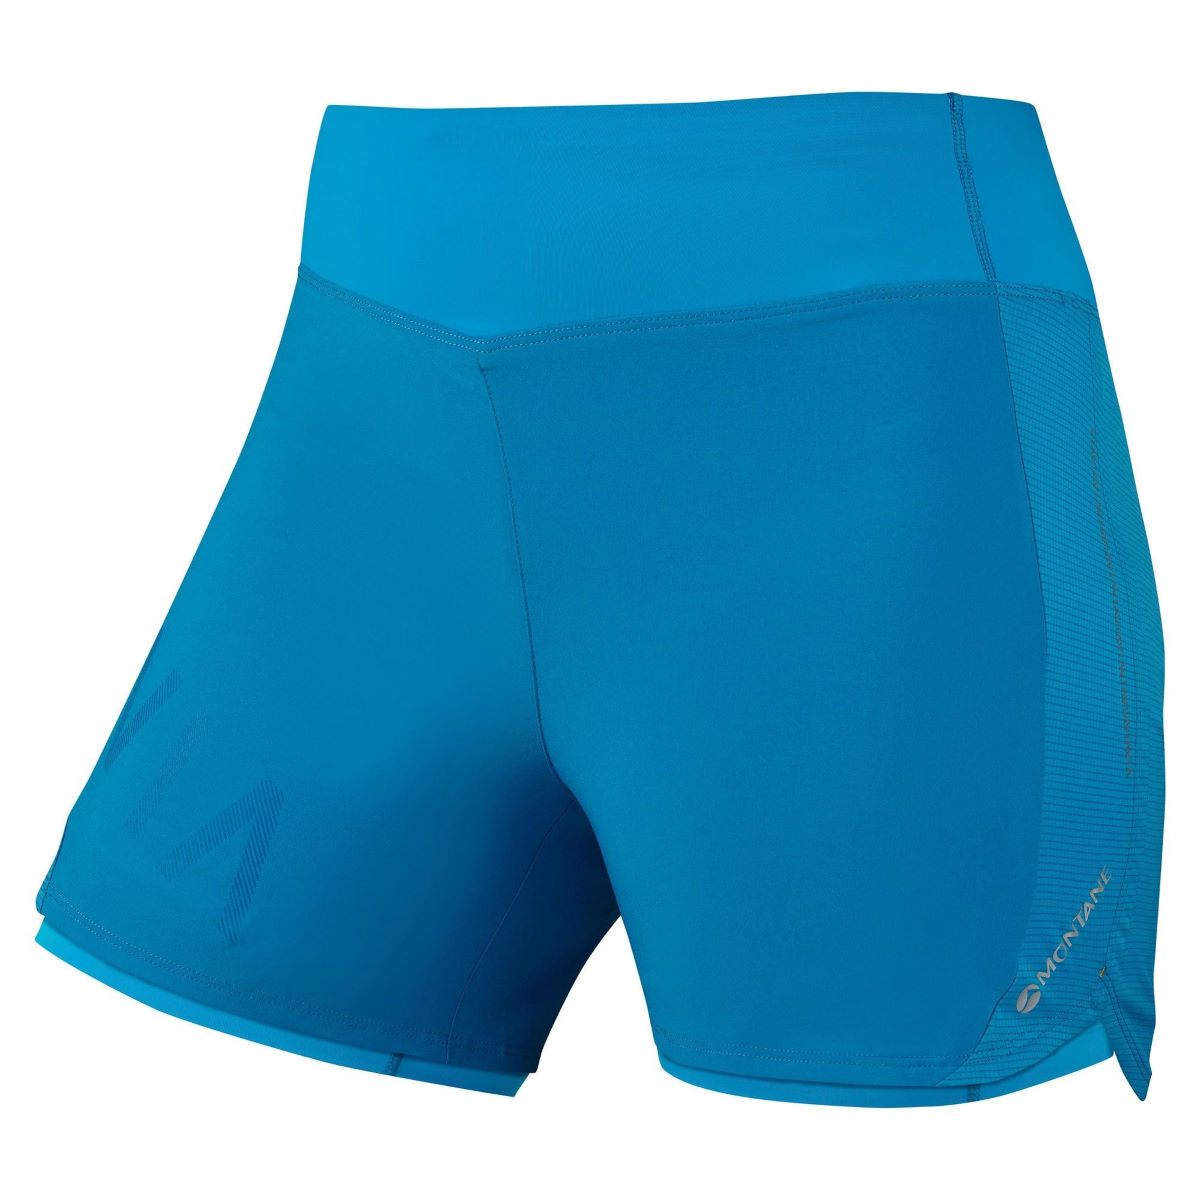 Montane Women's Katla Twin Skin Running Shorts - Pantalones cortos